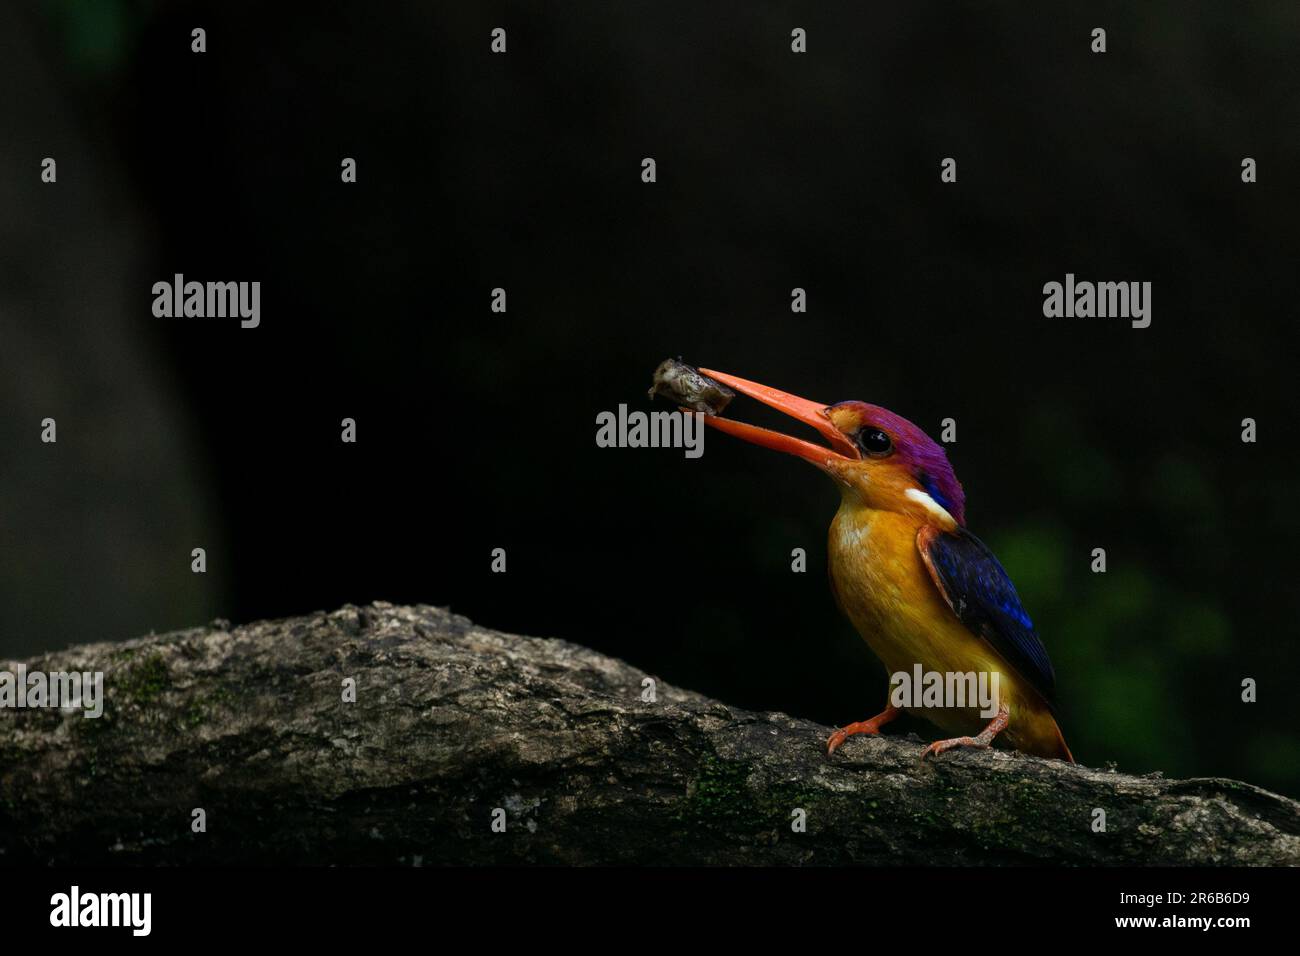 Le kingfisher montre ses magnifiques couleurs. Panvel, Inde : CES images COLORÉES révèlent comment cet oiseau gourmand est encore un prédateur à succès despi Banque D'Images